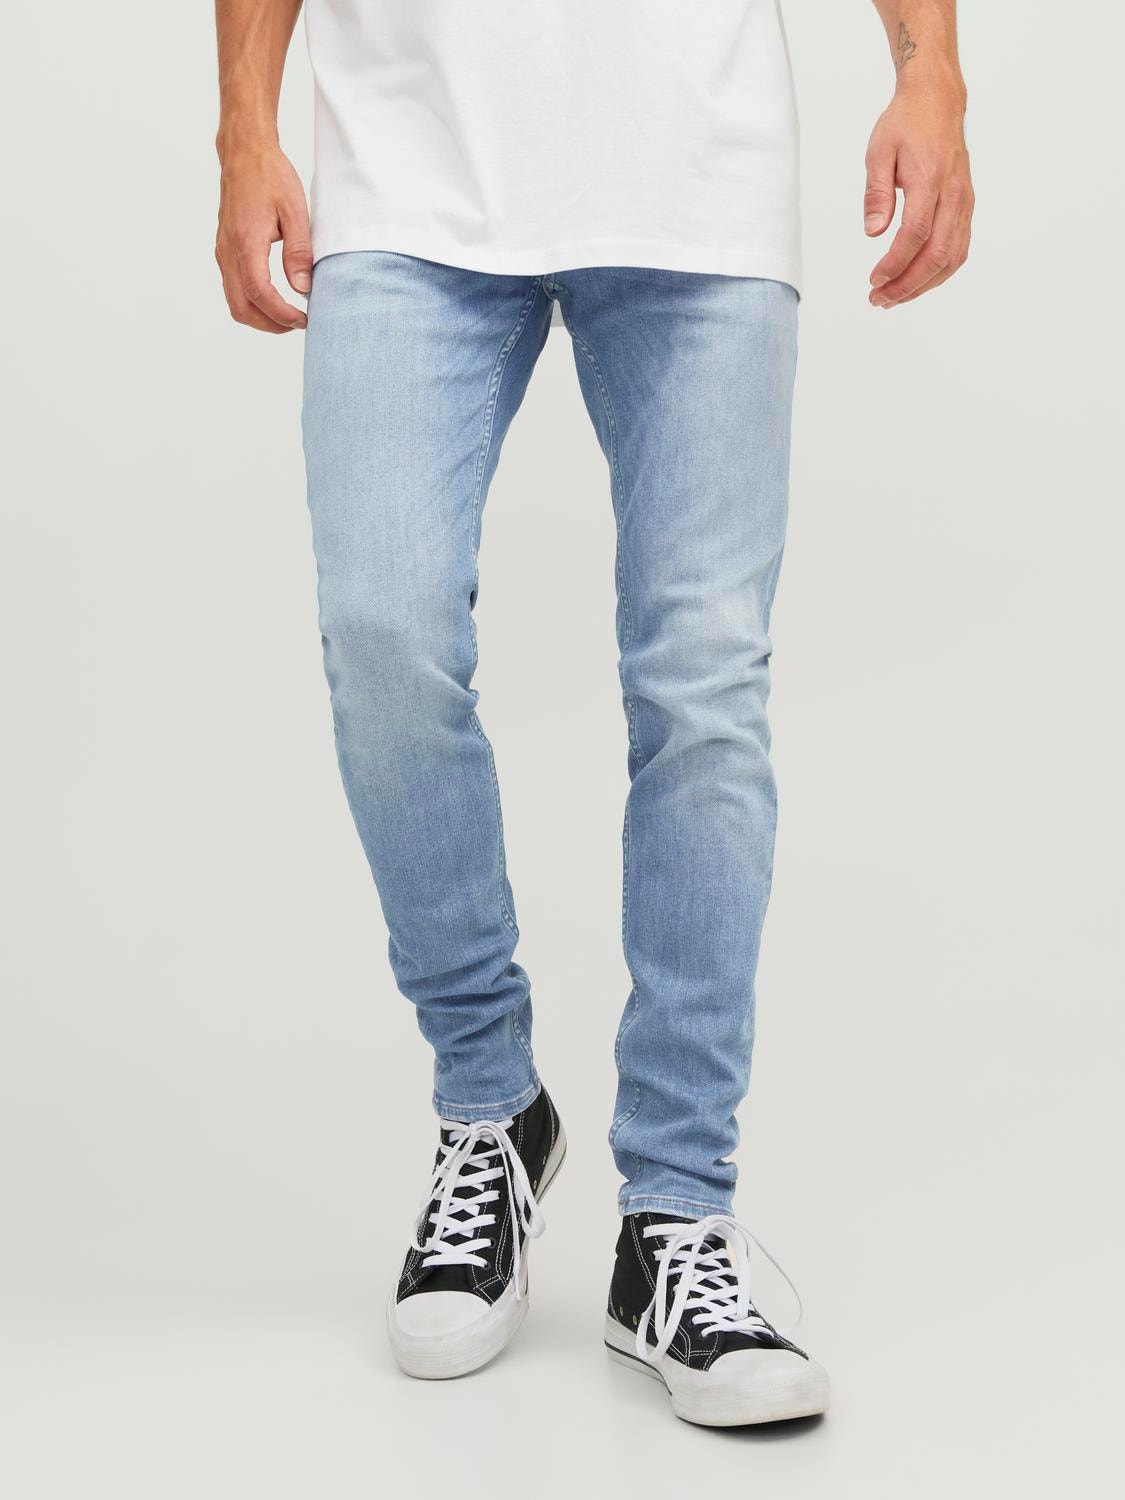 JJITOM JJORIGINAL CJ 610 50SPS Skinny fit jeans, Medium Blue